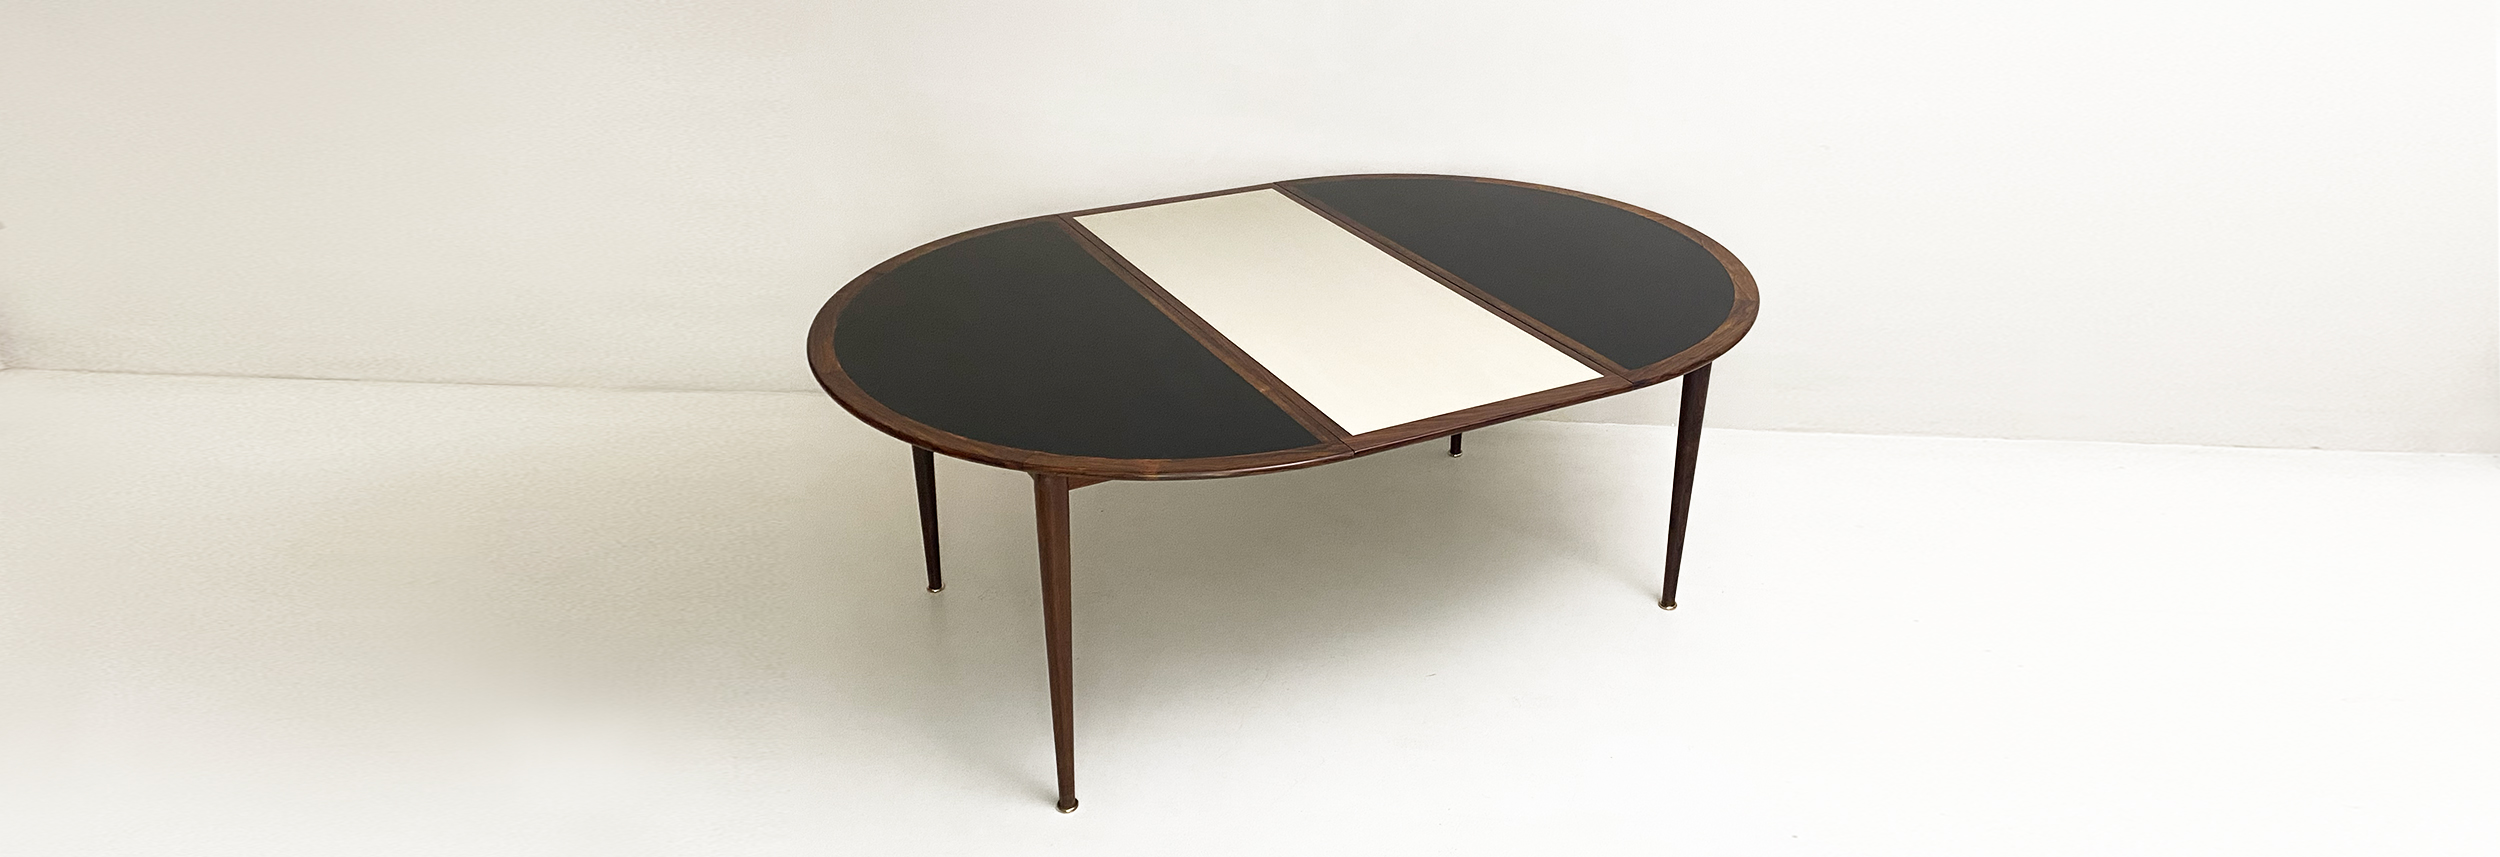 tavolo allungabile design scandinavo anni60 by grete jalk 022 T